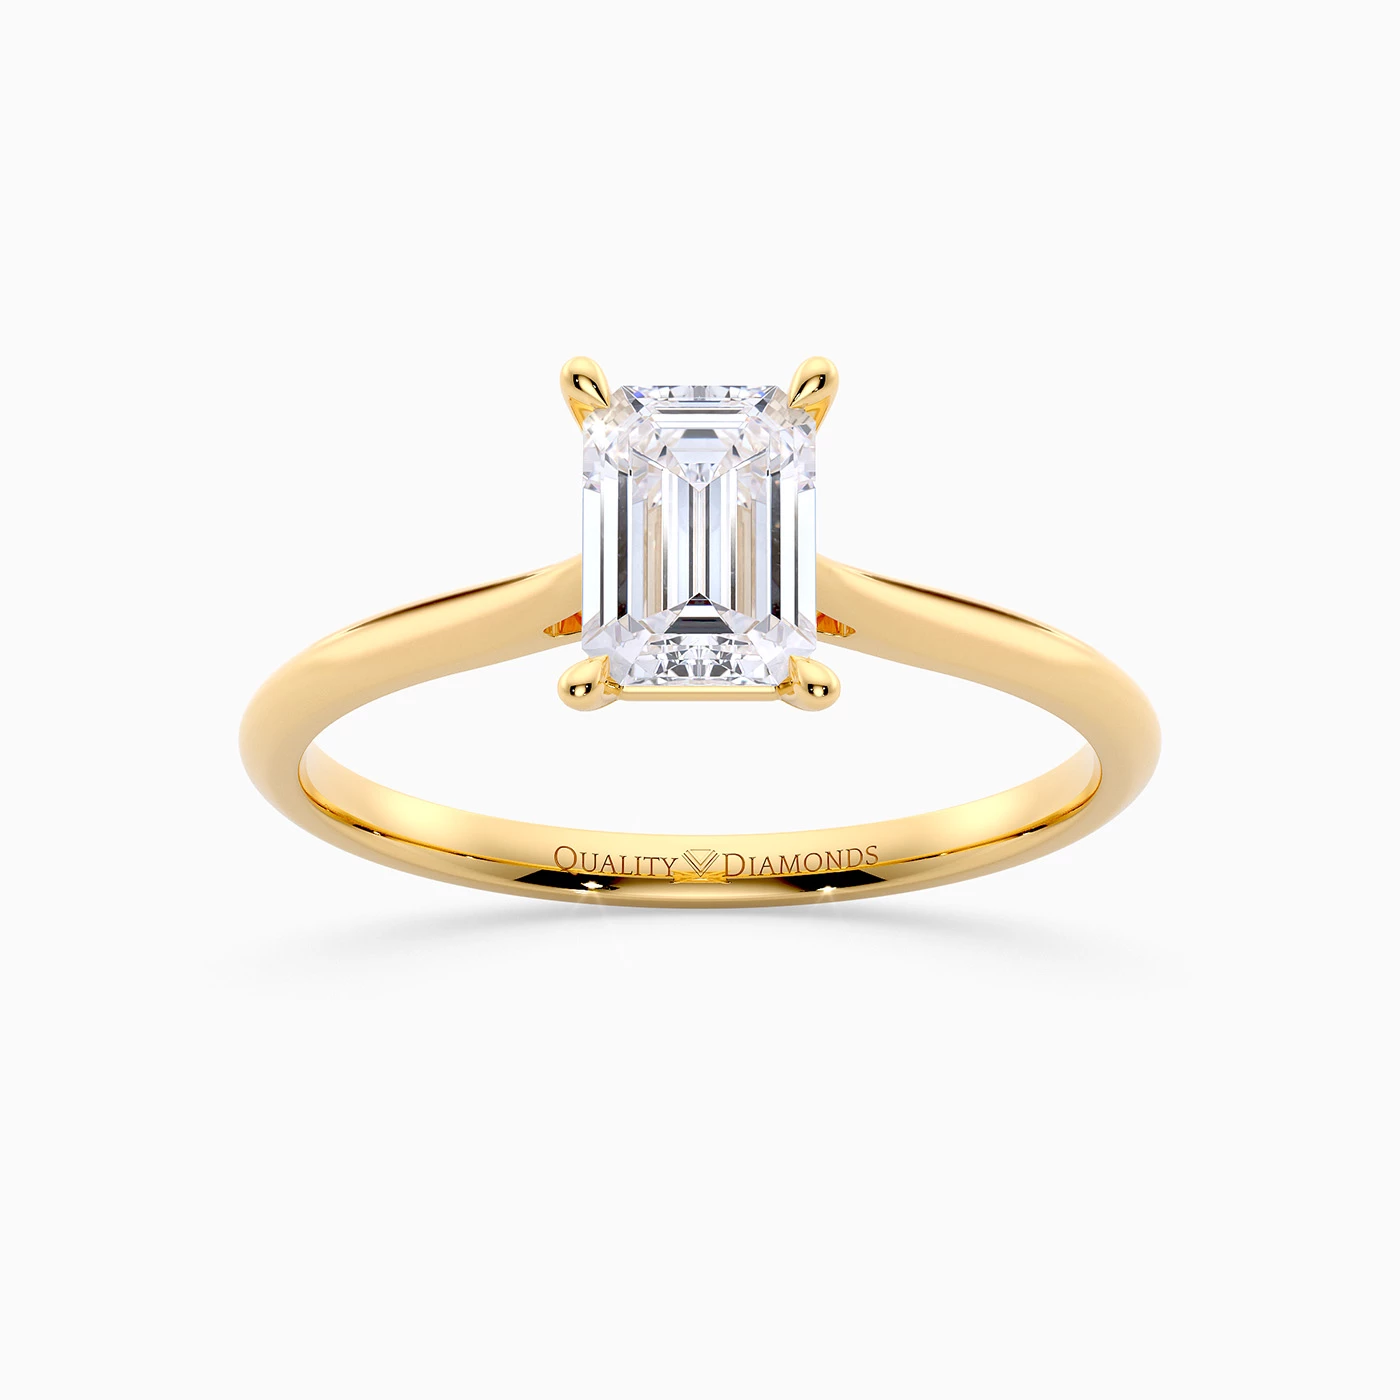 Emerald Carys Diamond Ring in 9K Yellow Gold